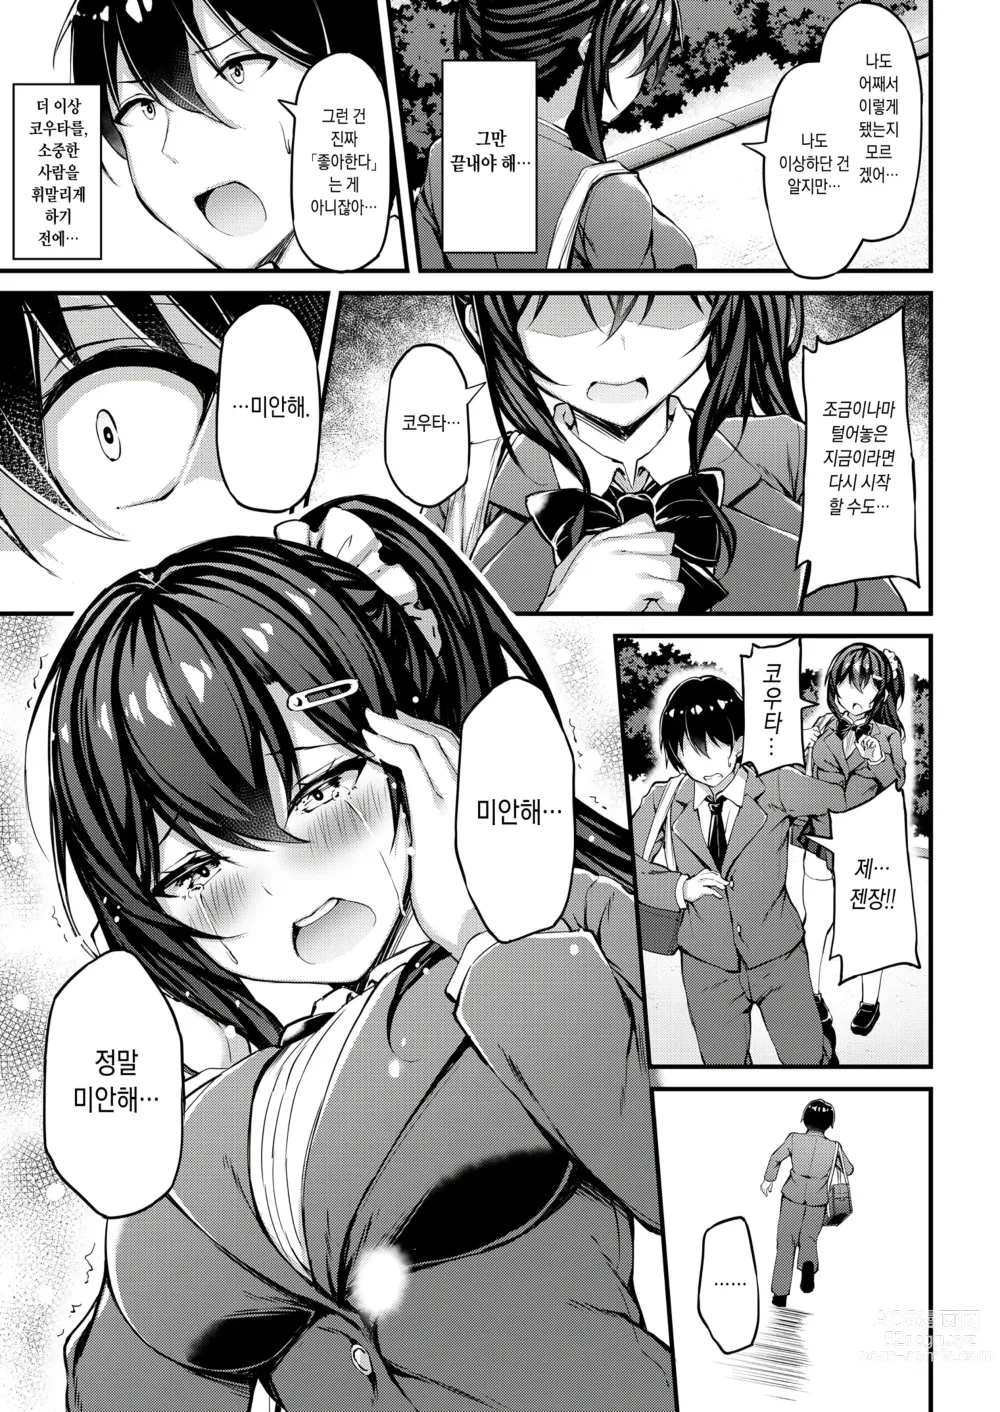 Page 14 of doujinshi 그녀가 트레이닝복을 입는 이유 -내 아저씨에게 바치는 성춘색 트레이닝복-